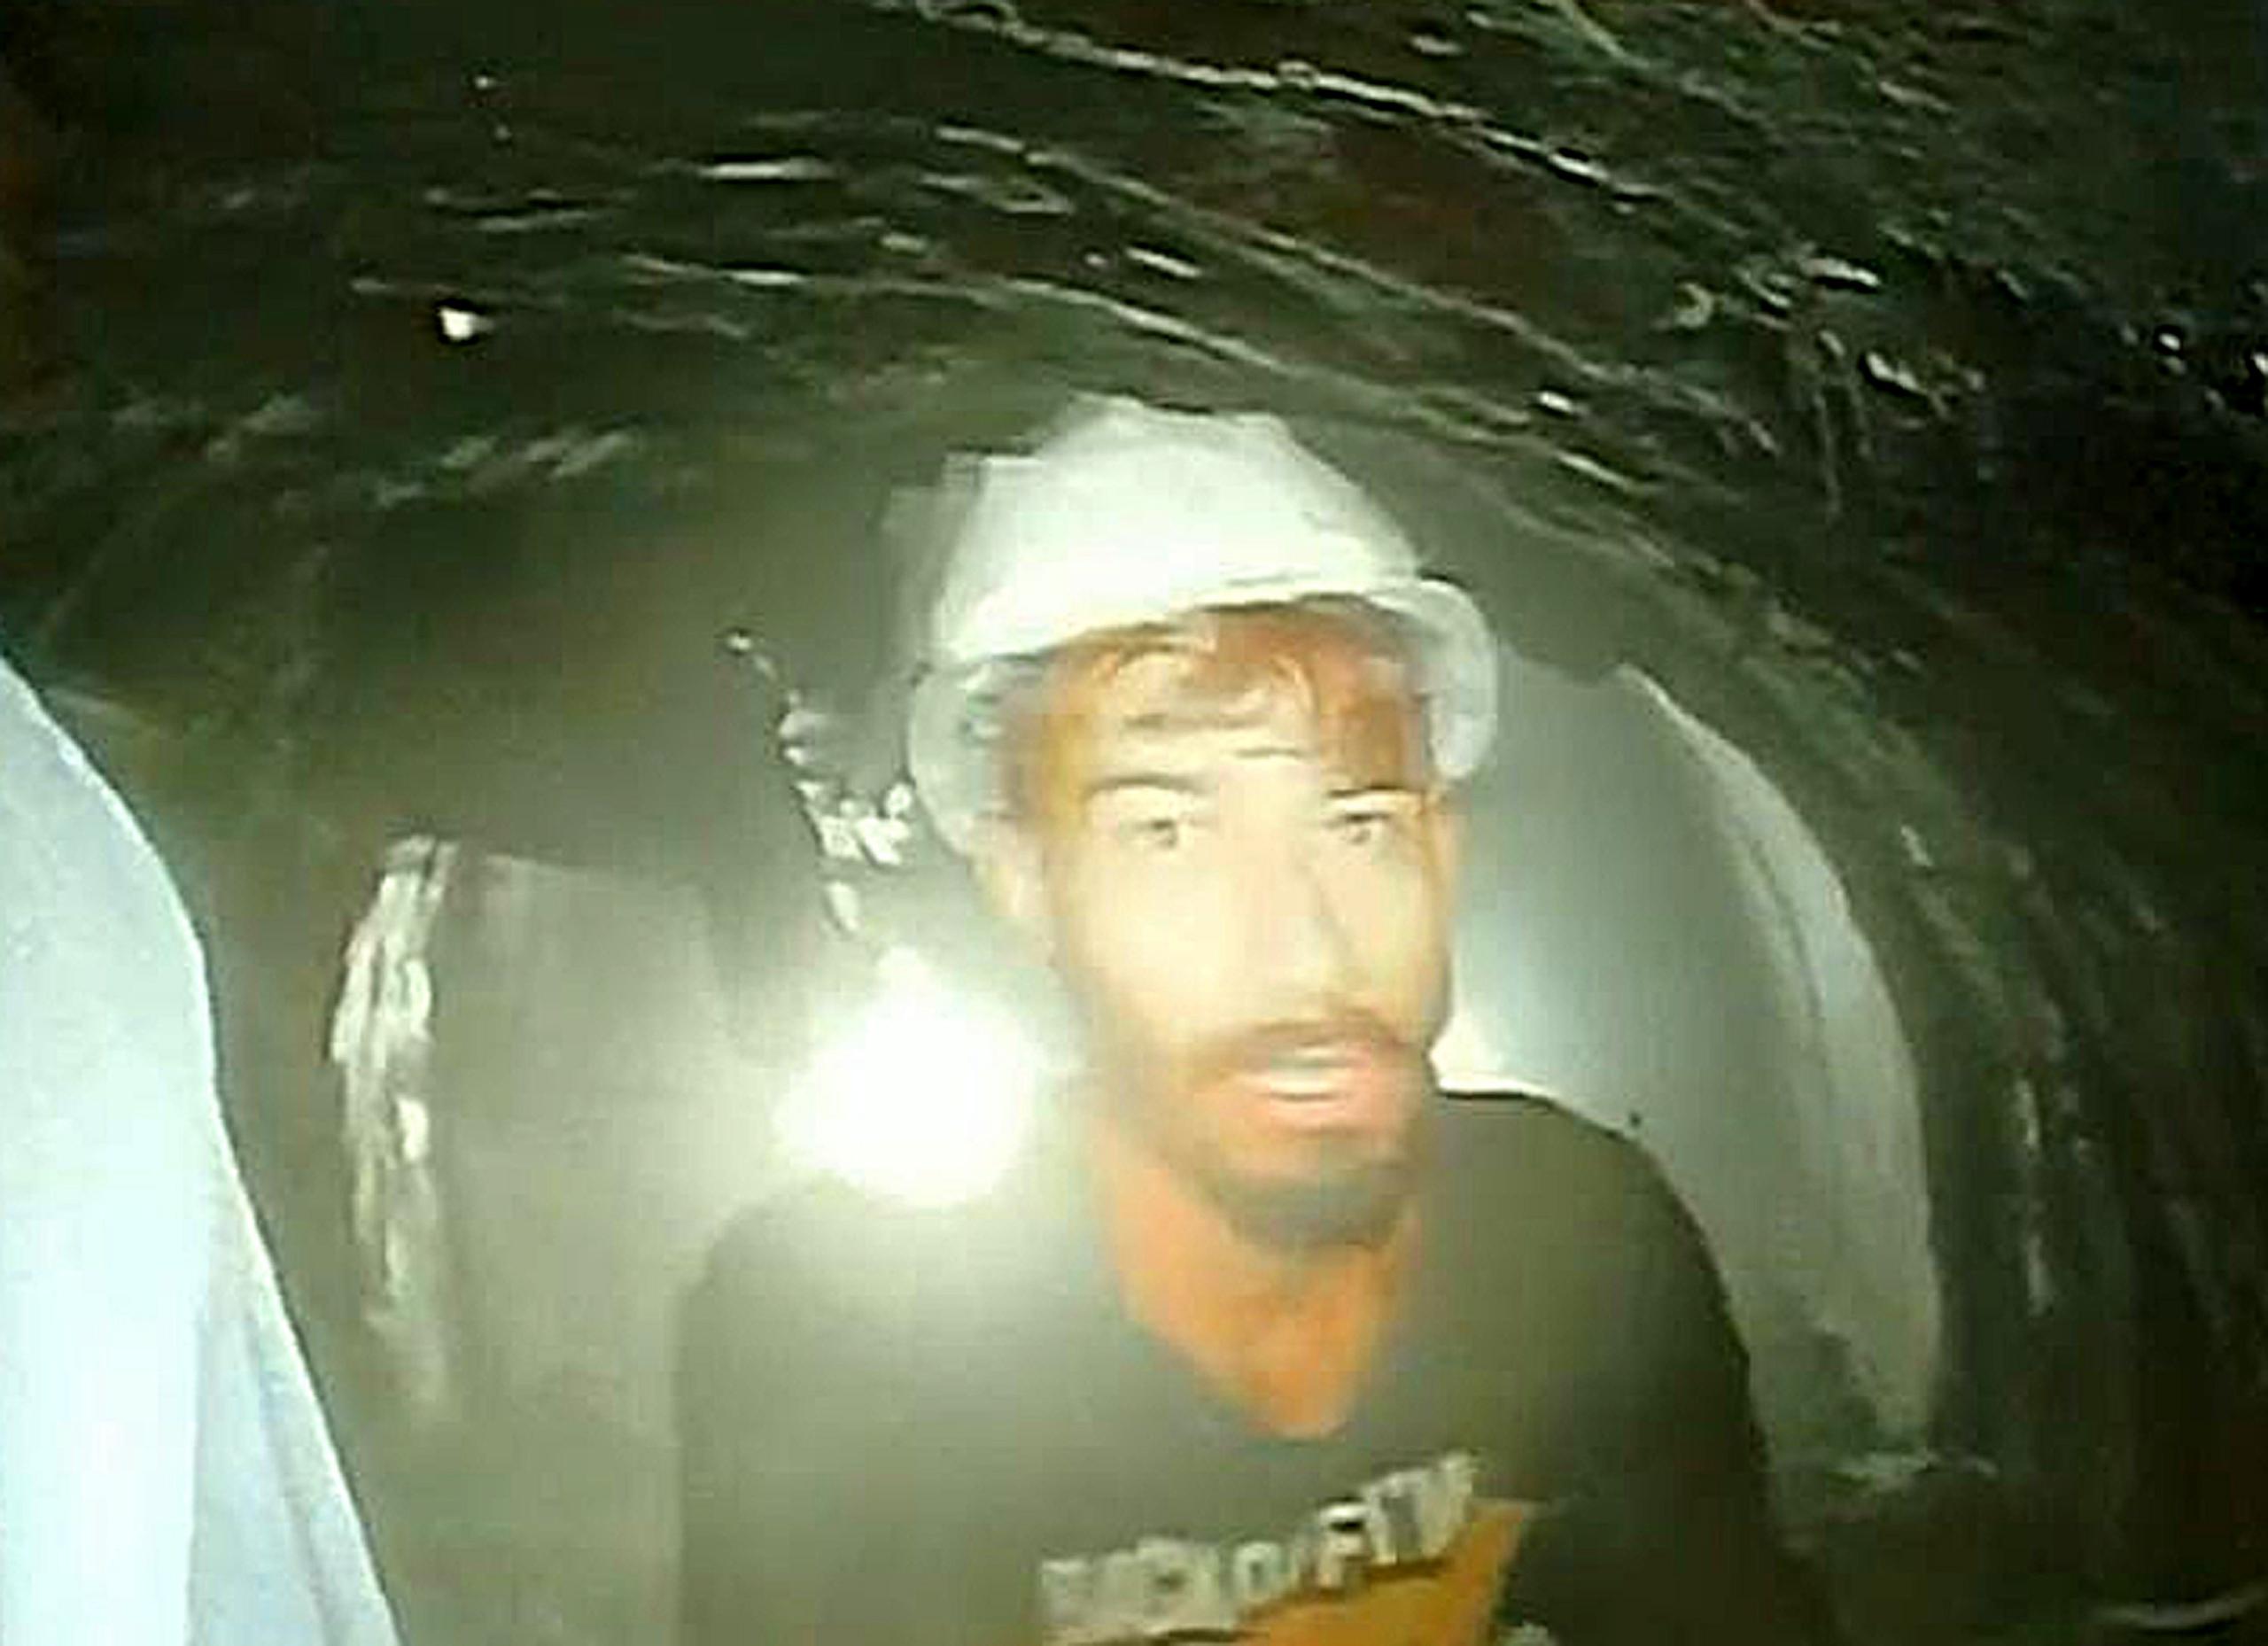 El vídeo muestra a un grupo de obreros, primero sacando la cámara de la tubería y luego agrupados en torno a ella, en el interior de un túnel iluminado por varios potentes focos.